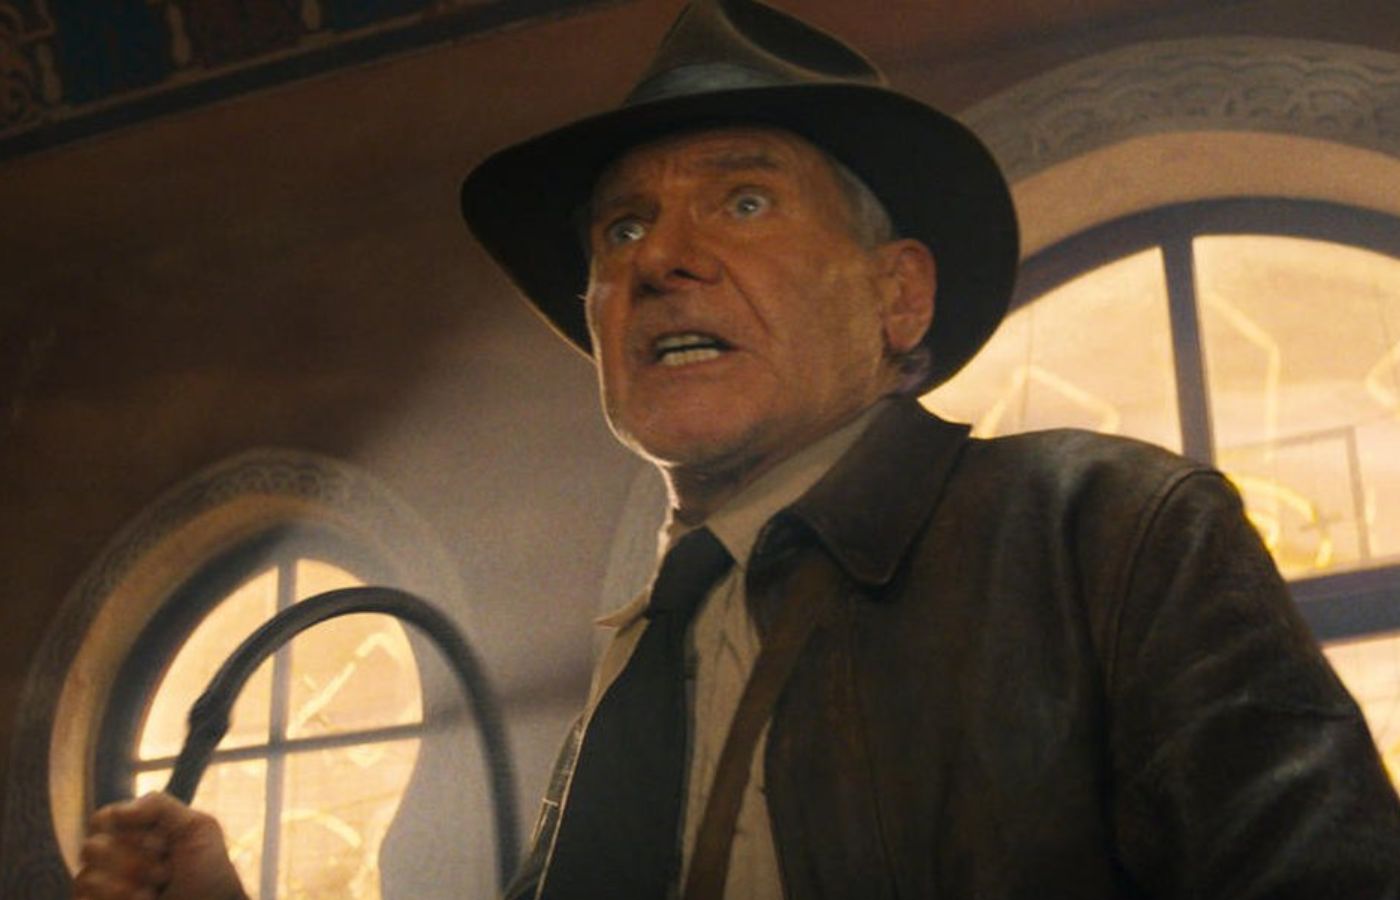 Indiana Jones' se despede dos fãs em filme com retornos e inovações:  confira curiosidades e saiba onde ver os anteriores